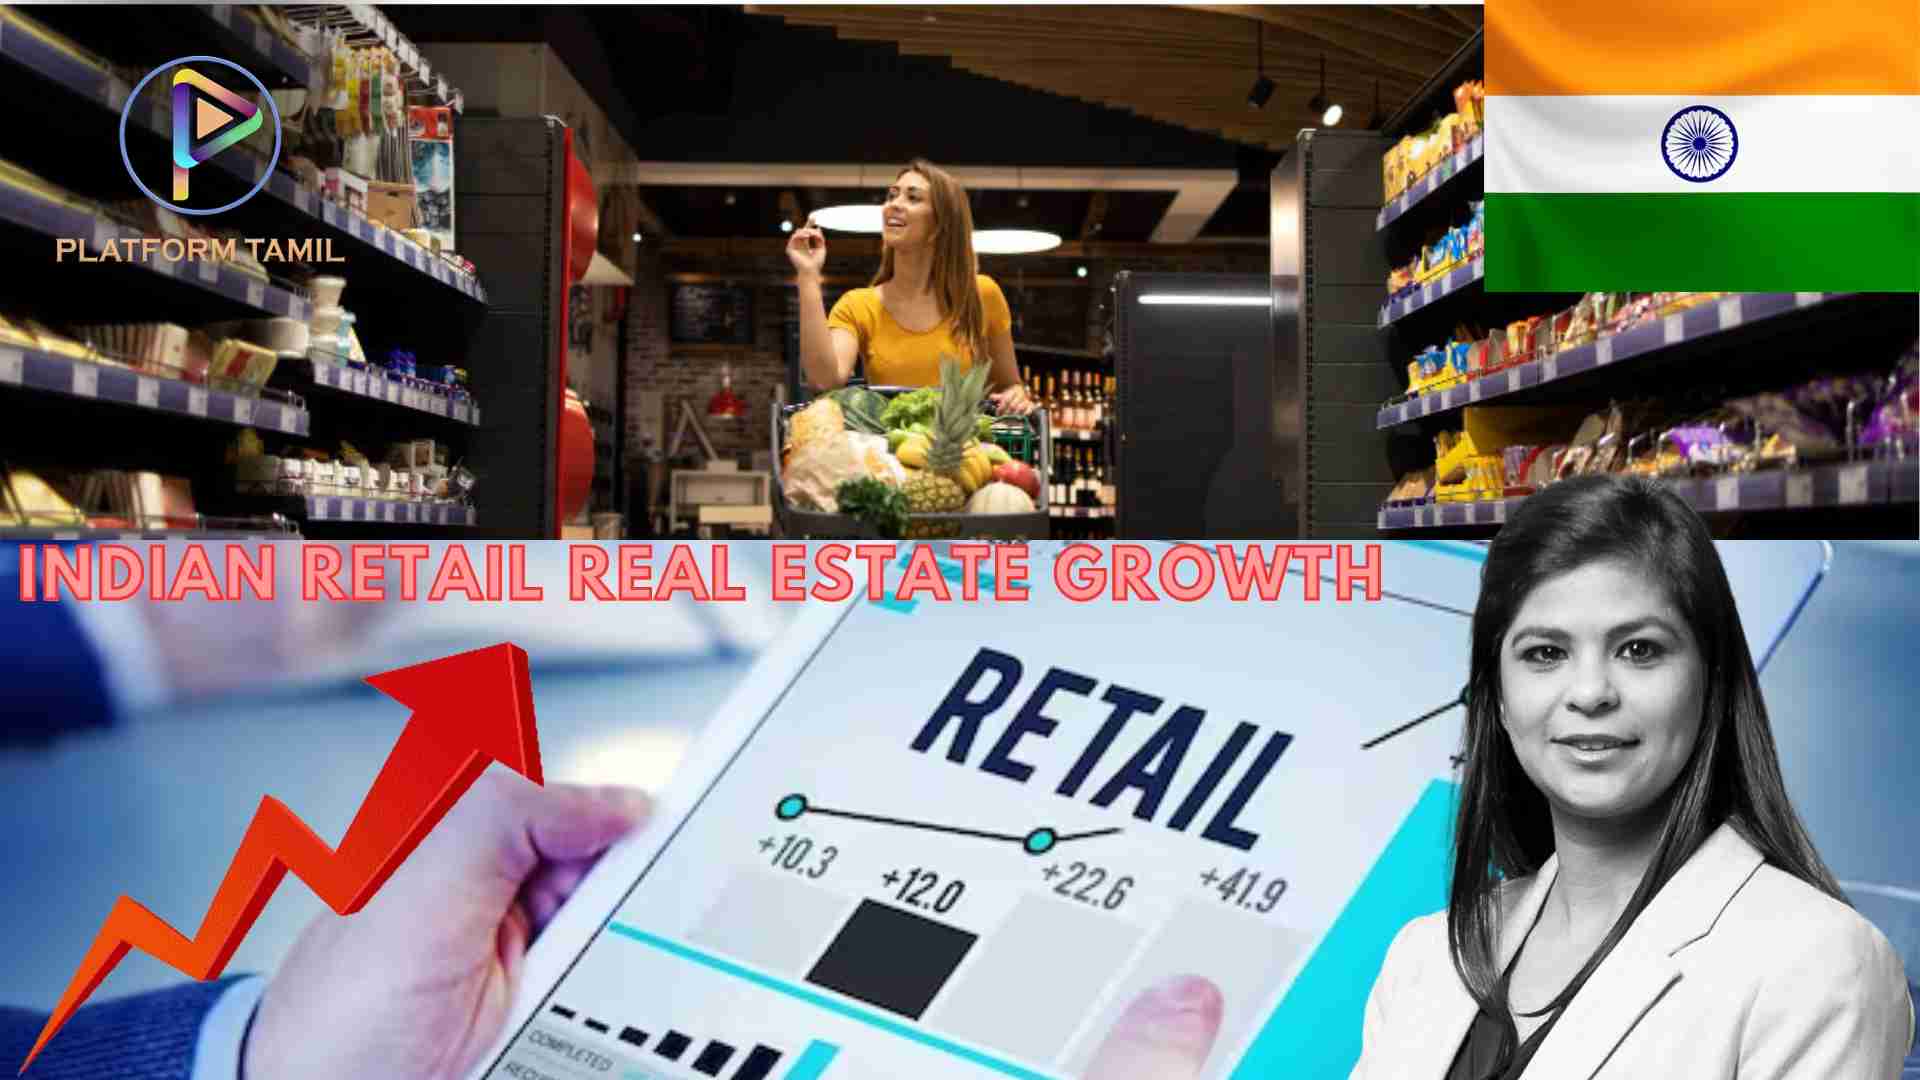 Retail Real Estate - Platform Tamil